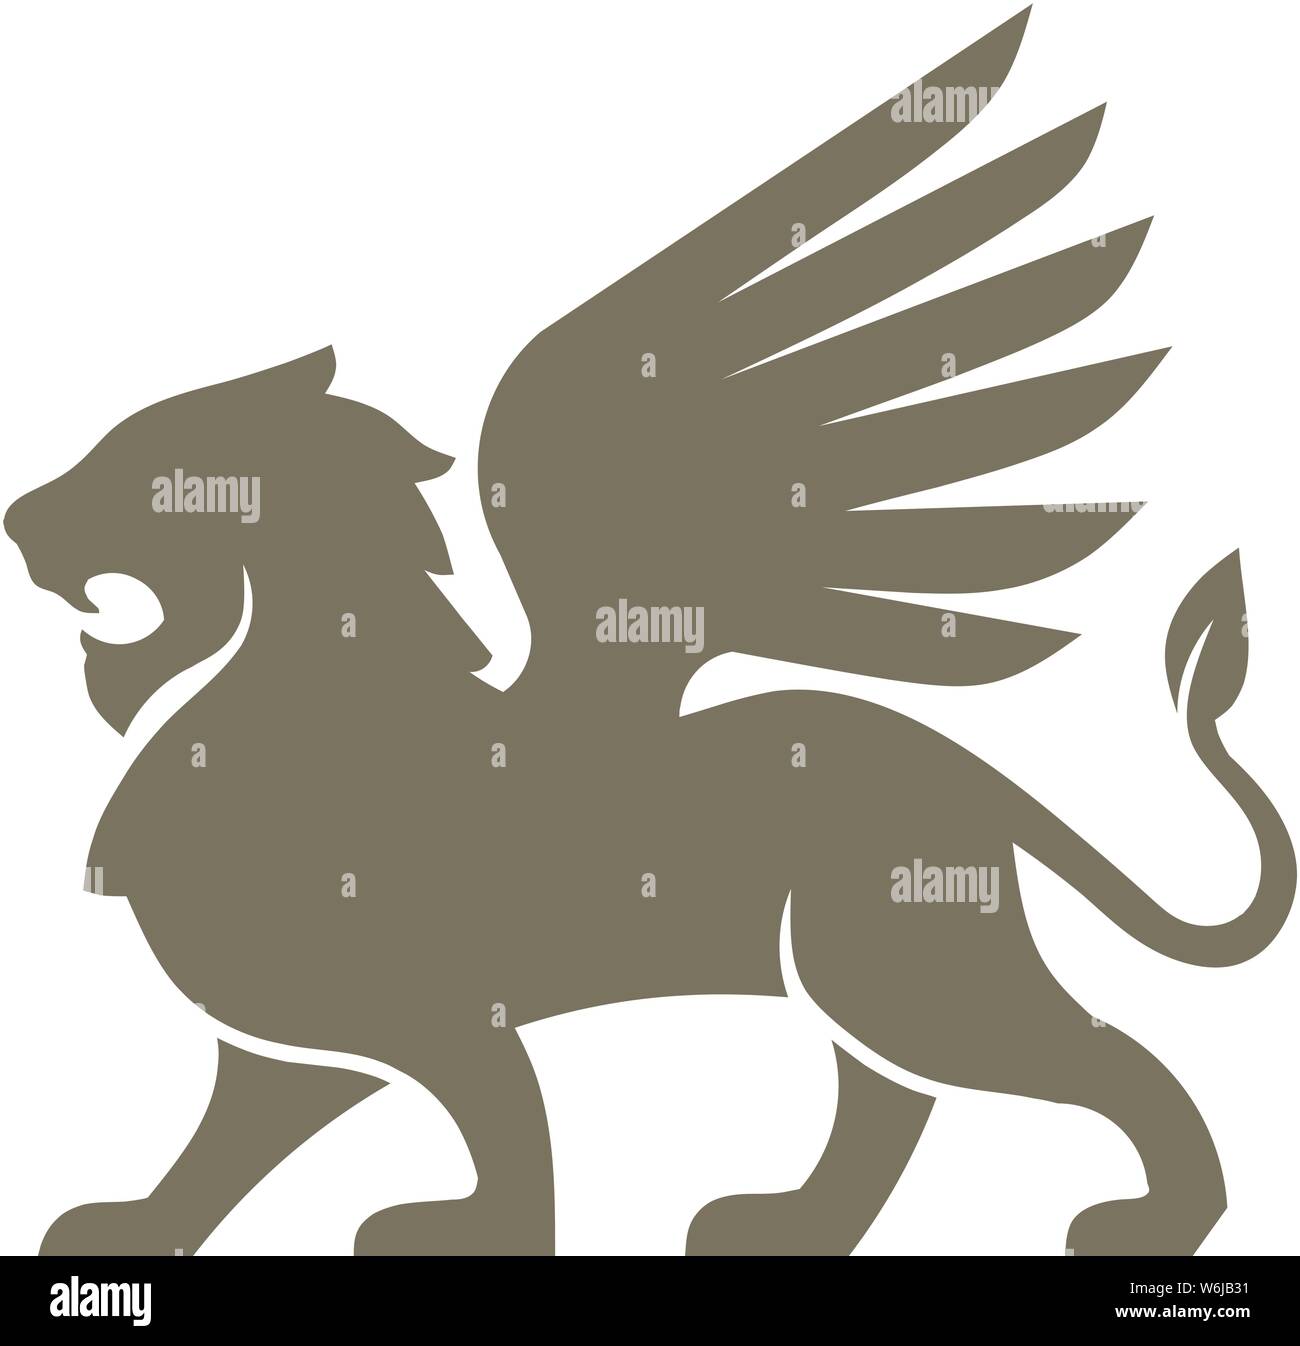 Creative lion logo ala illustrazione vettoriale, Leone alato antichi elementi emblemi Illustrazione Vettoriale